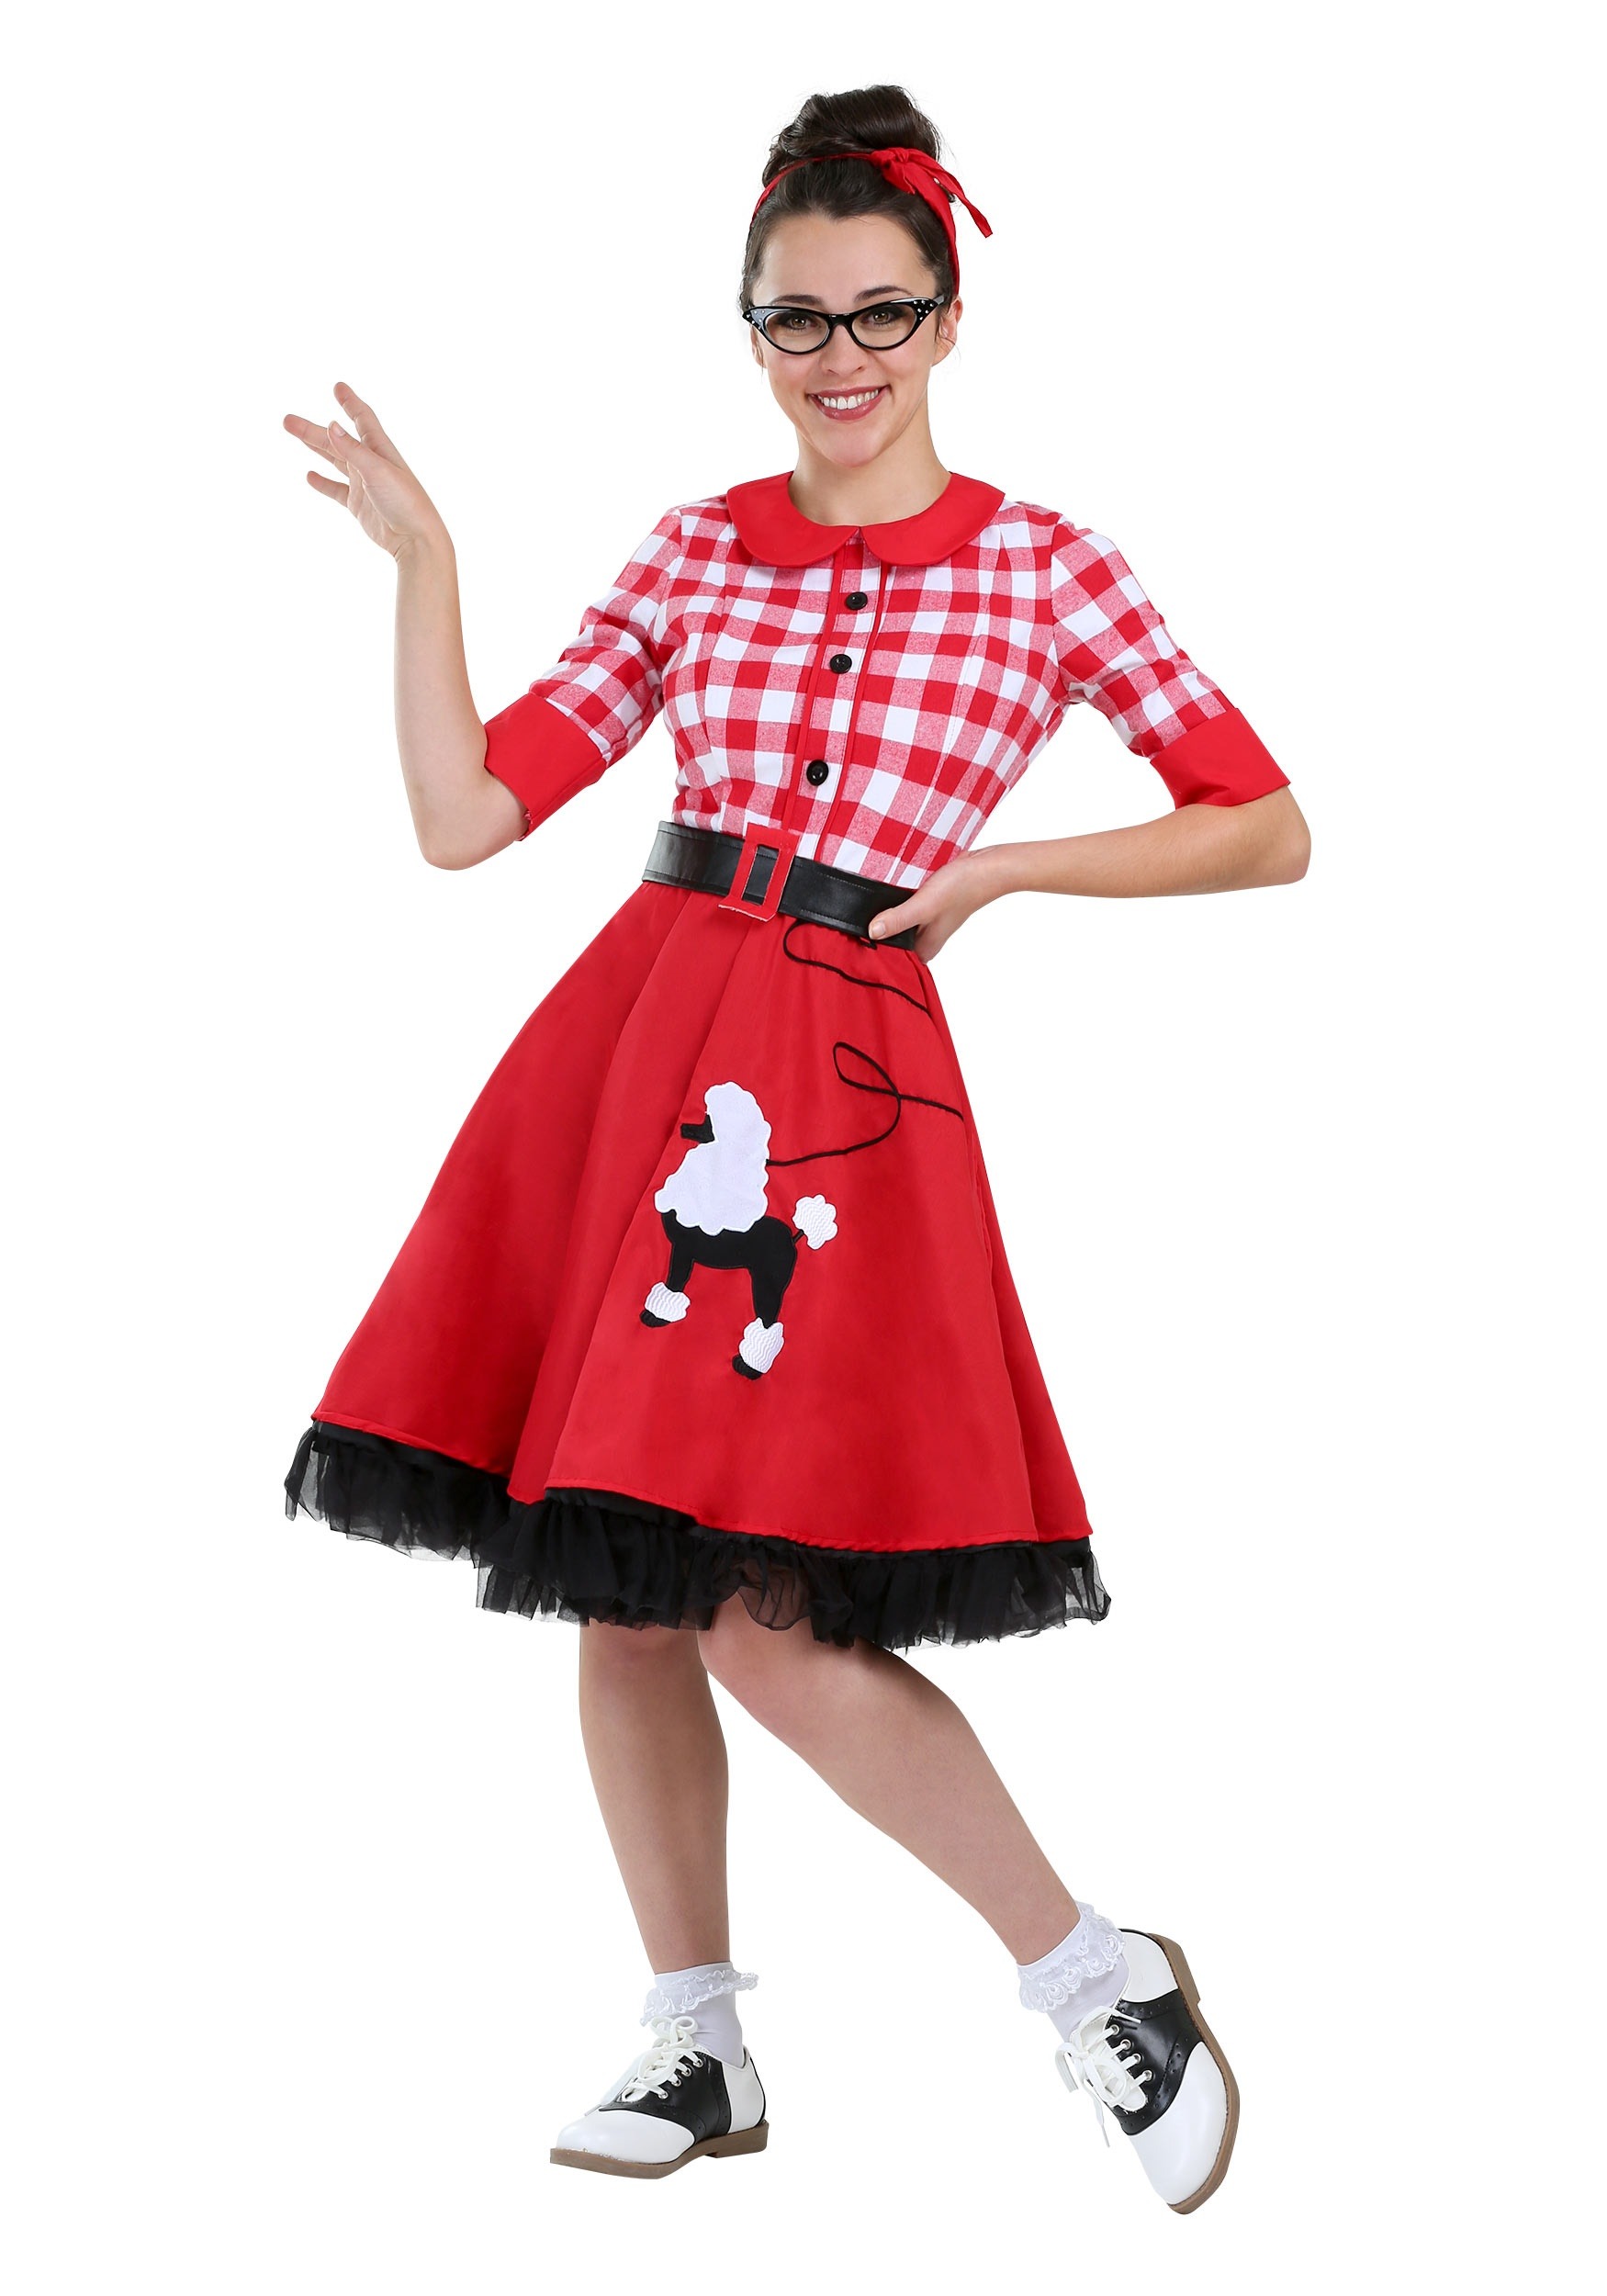 Poodle Skirts | Poodle Skirt Costumes, Patterns, History Plus Size Womens 50s Sock Hop Darling Costume $39.99 AT vintagedancer.com